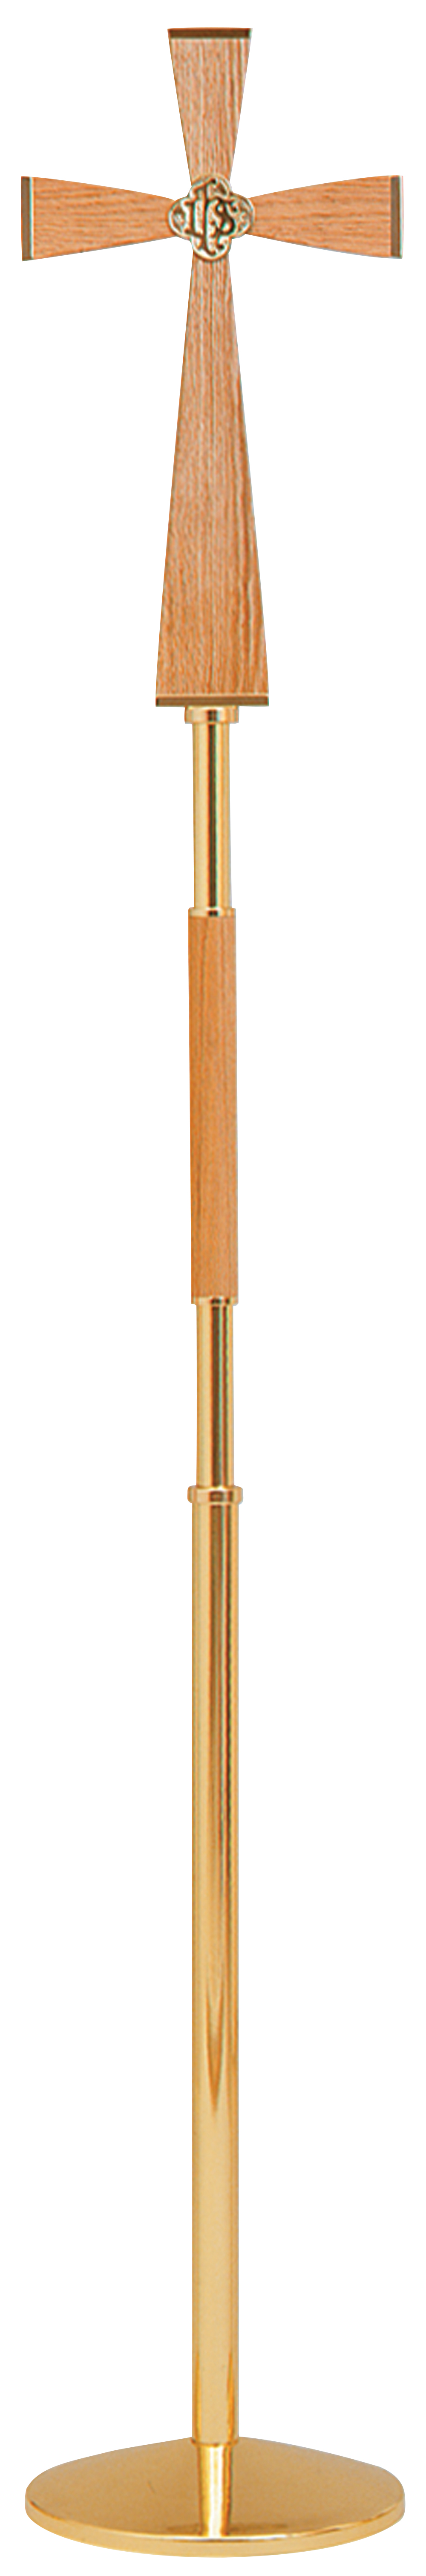 Processional Cross Oak Brass 78 inch